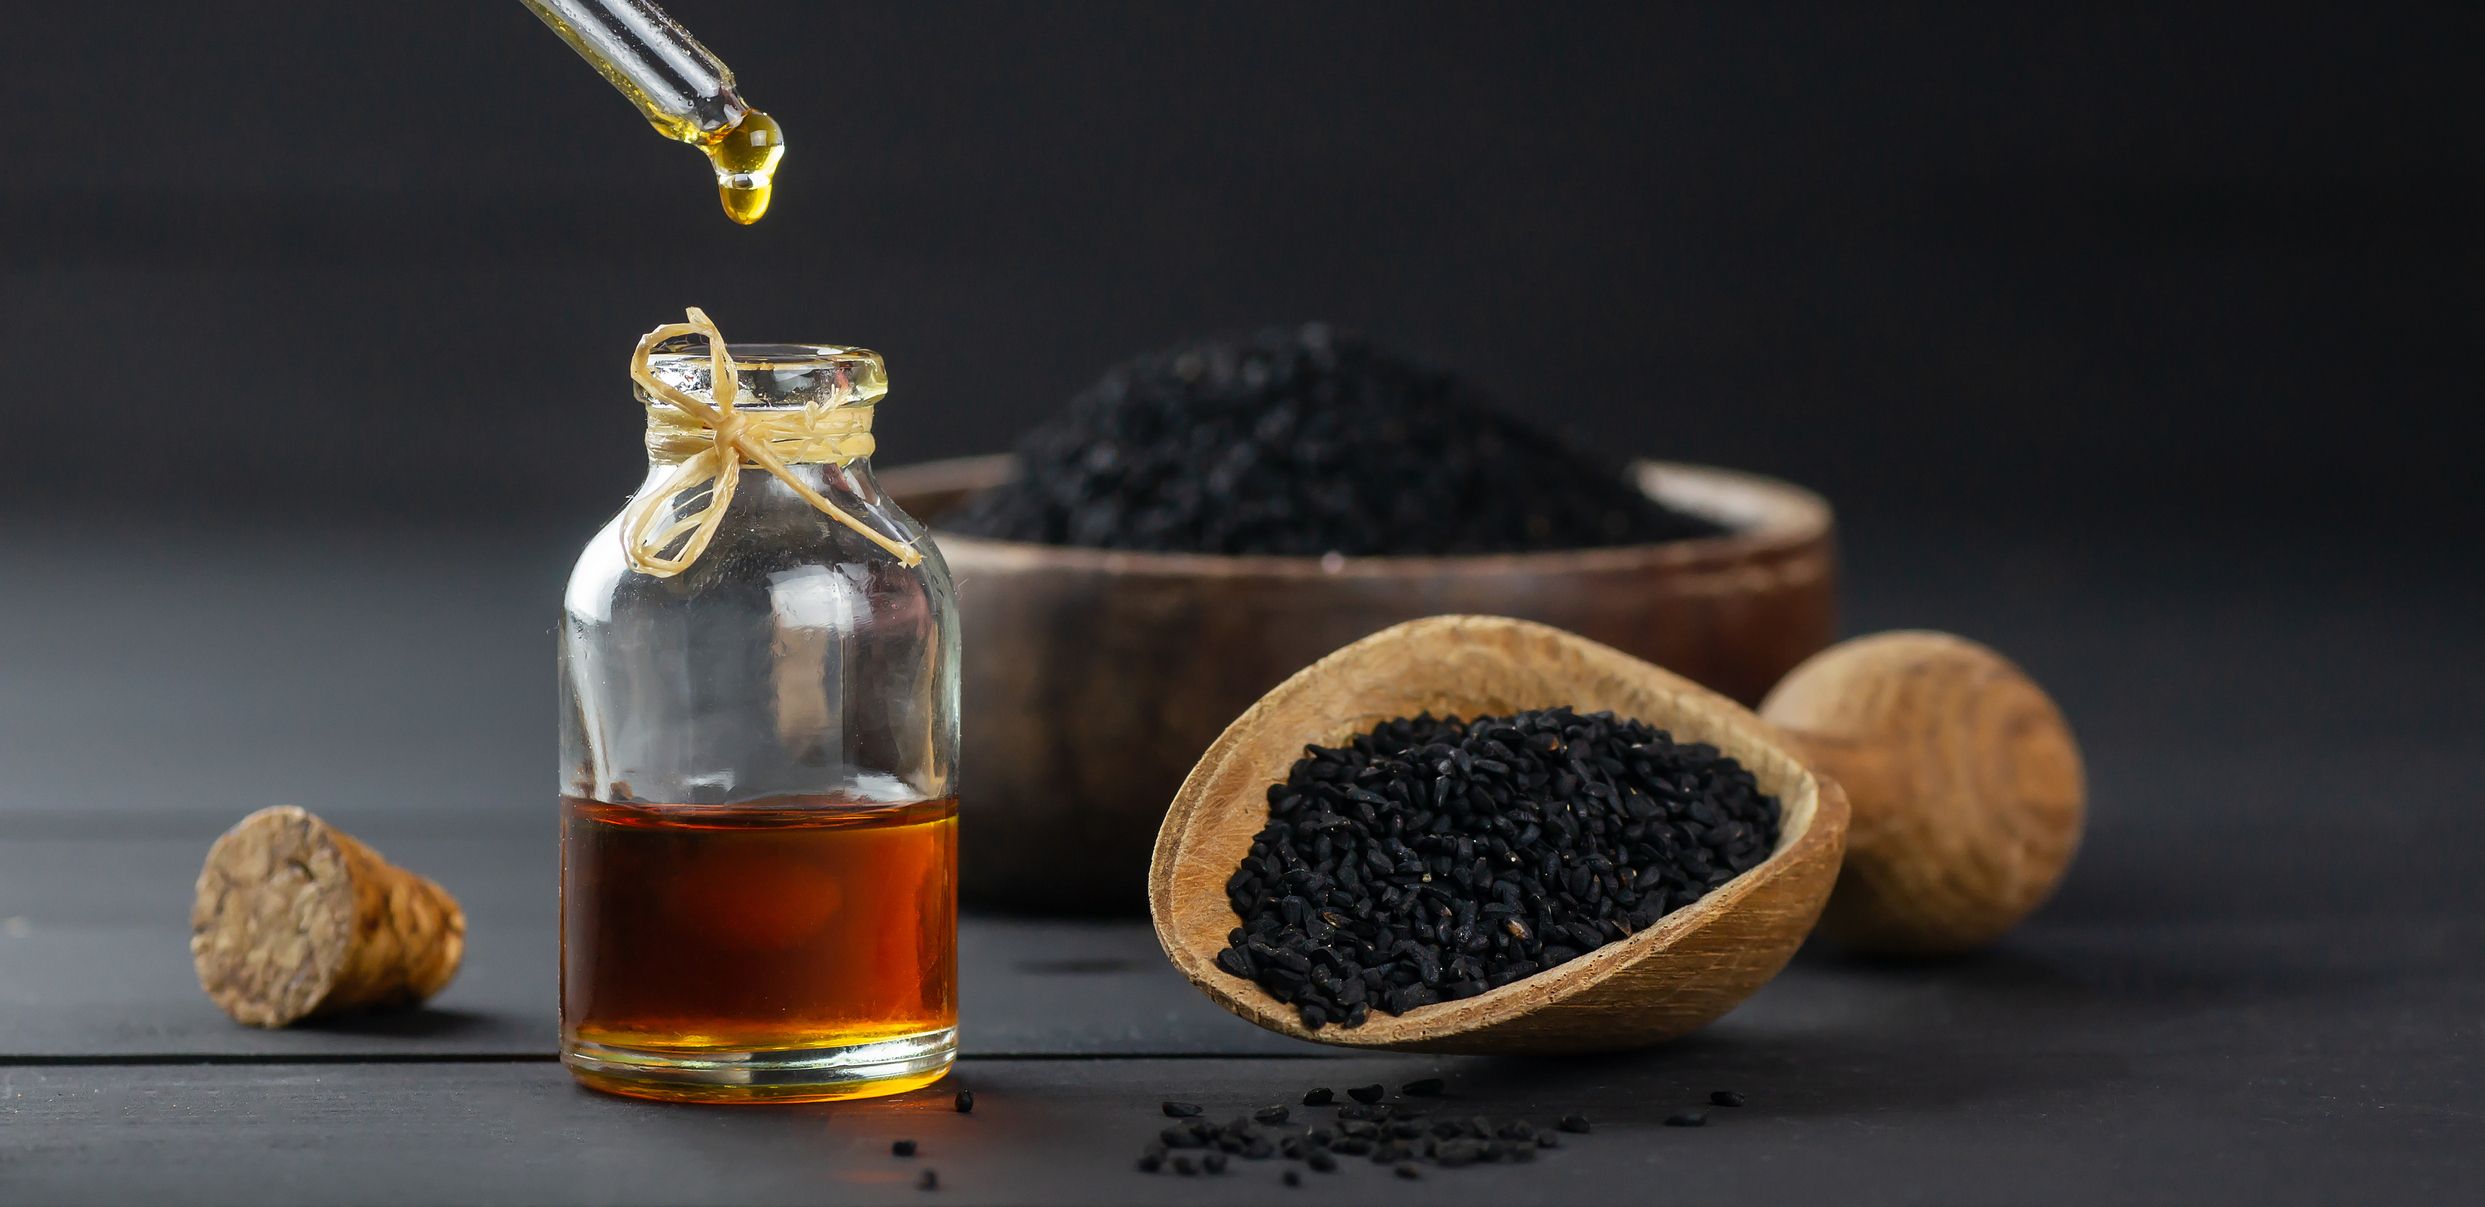 Entonces, ¿merece la pena el aceite de semillas negras?